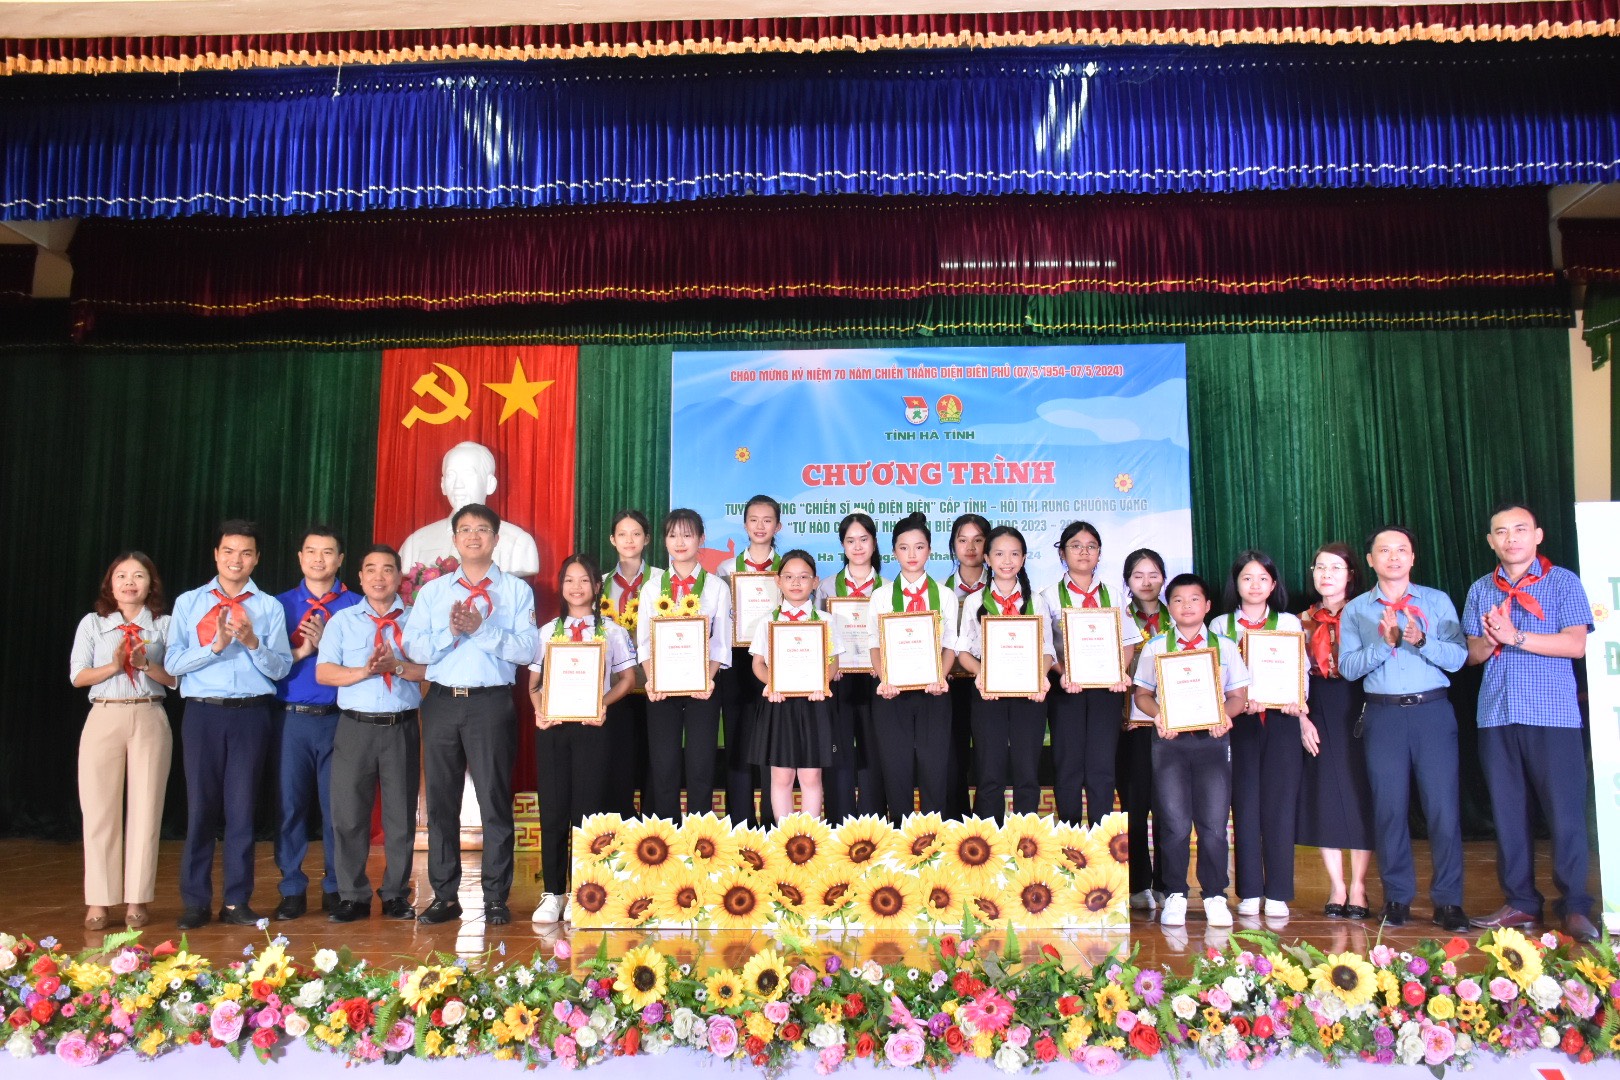 Tuyên dương 13 “Chiến sỹ nhỏ Điện Biên” là những đội viên xuất sắc trong toàn tỉnh